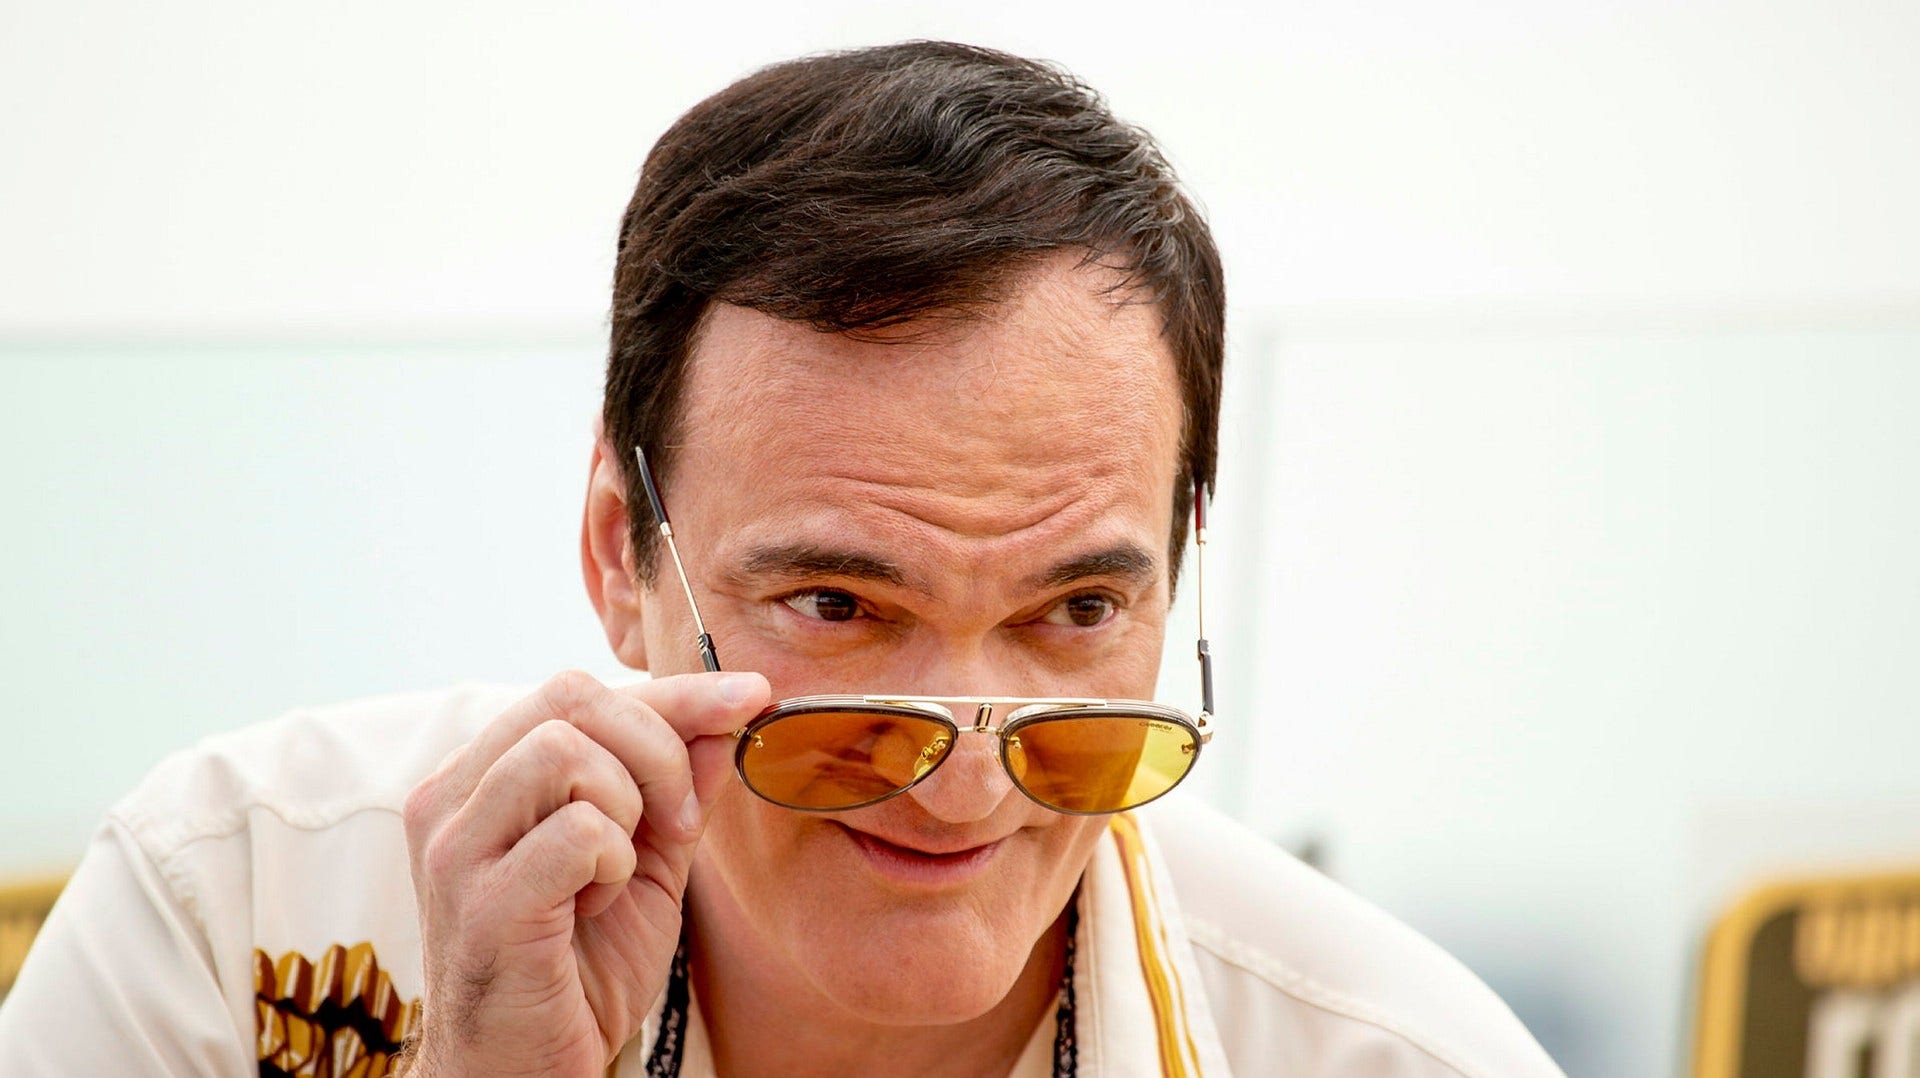 Quentin Tarantino har skrivit manus till sista filmen ”The movie